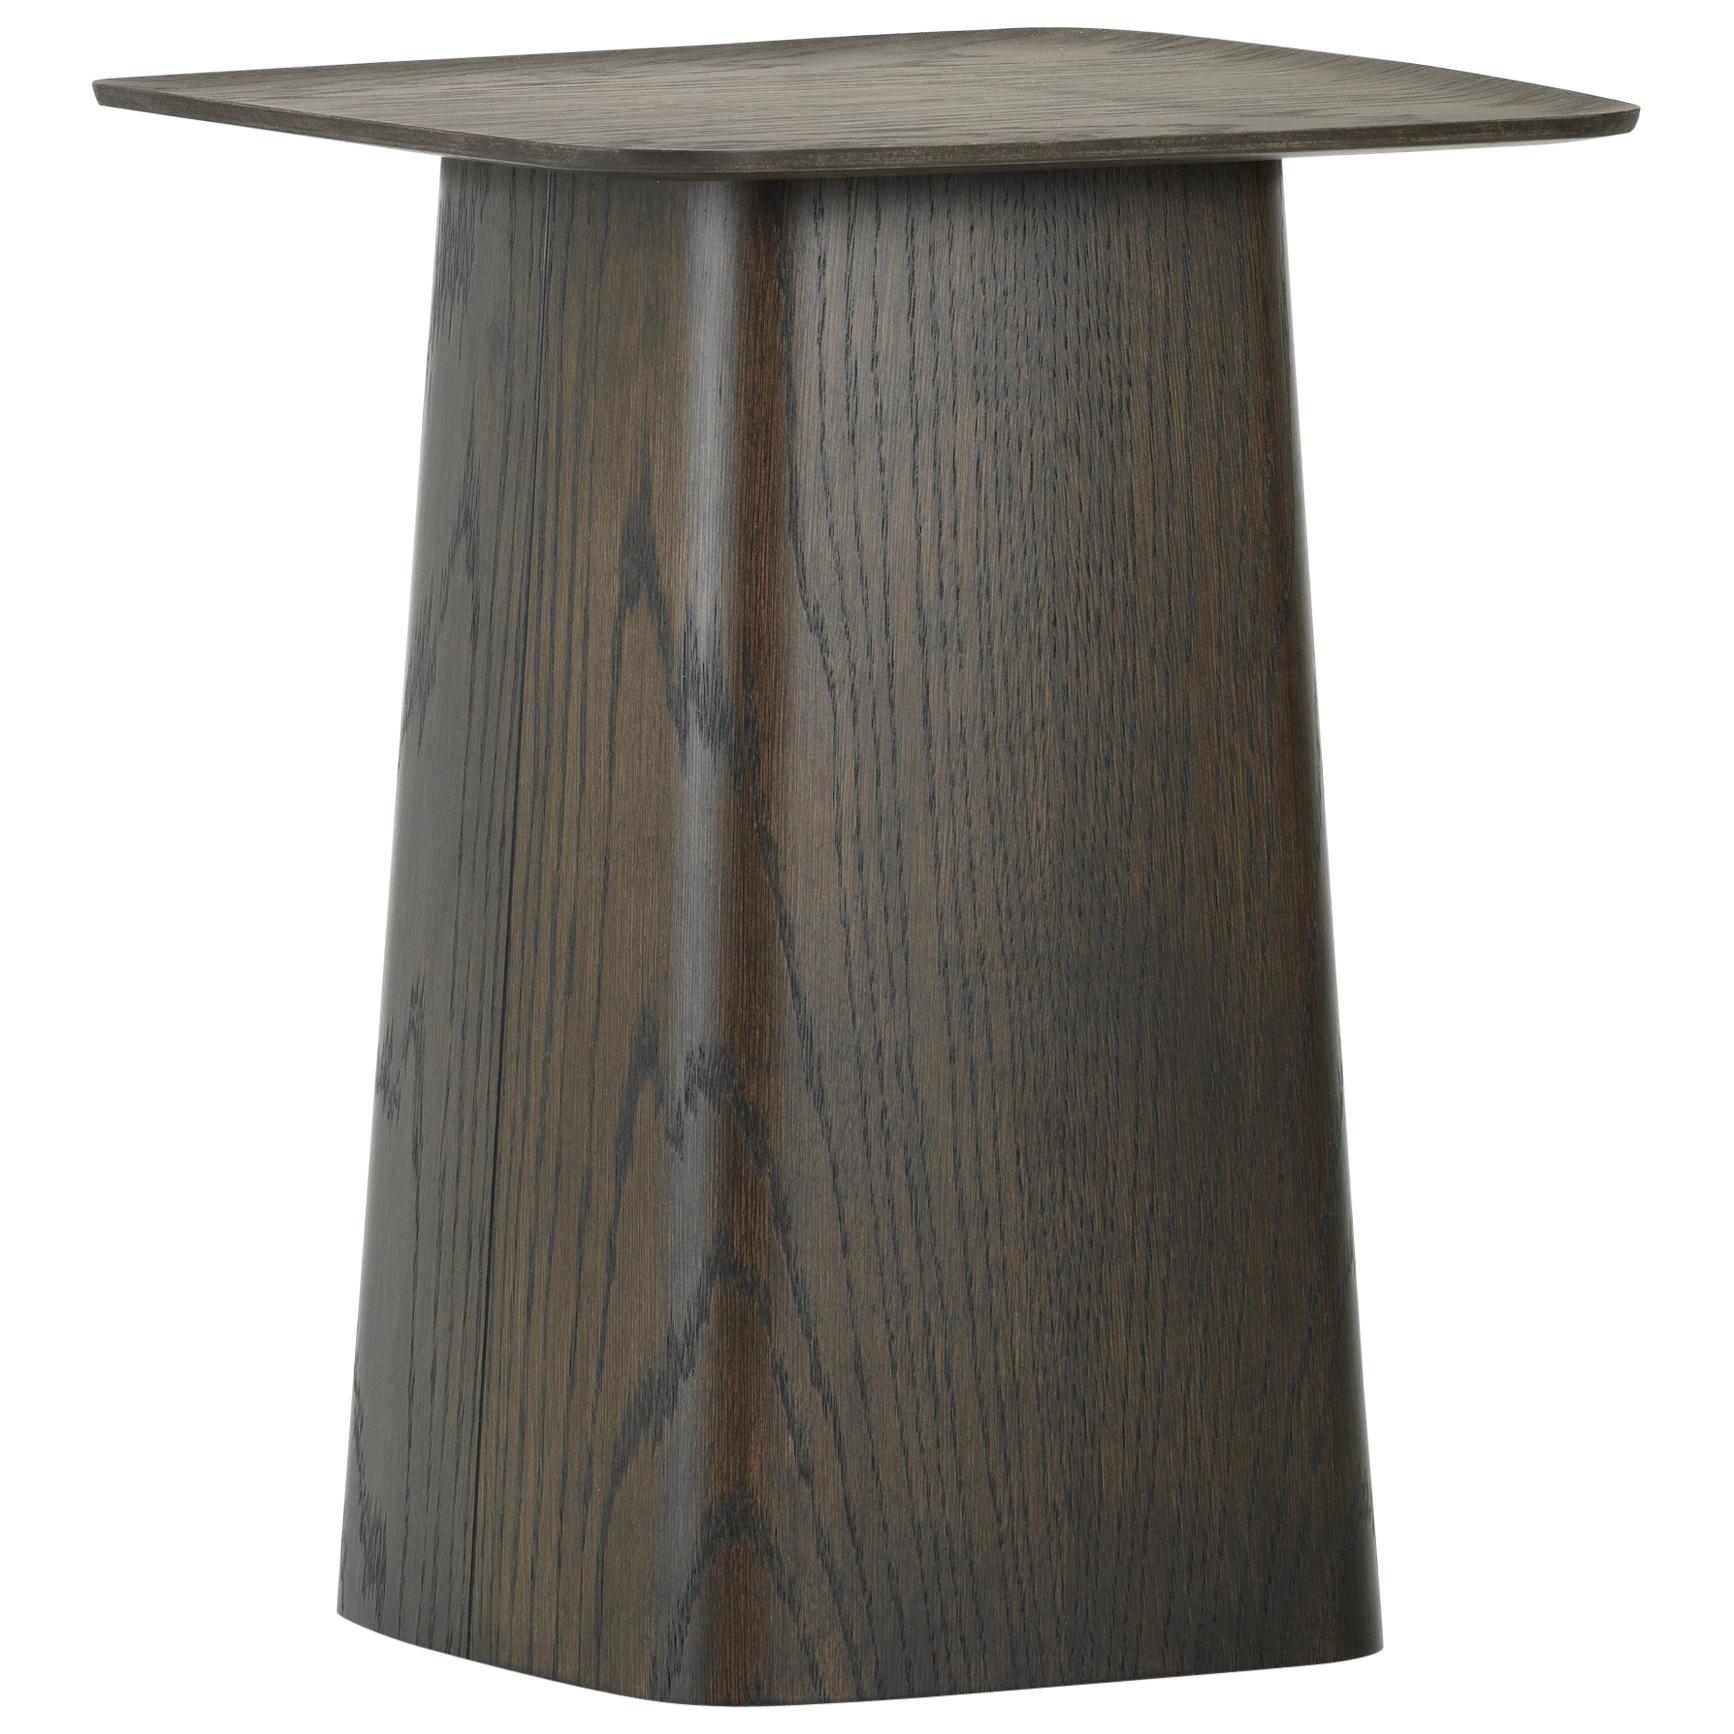 Vitra Small Wooden Side Table in Dark Oak by Ronan & Erwan Bouroullec For Sale